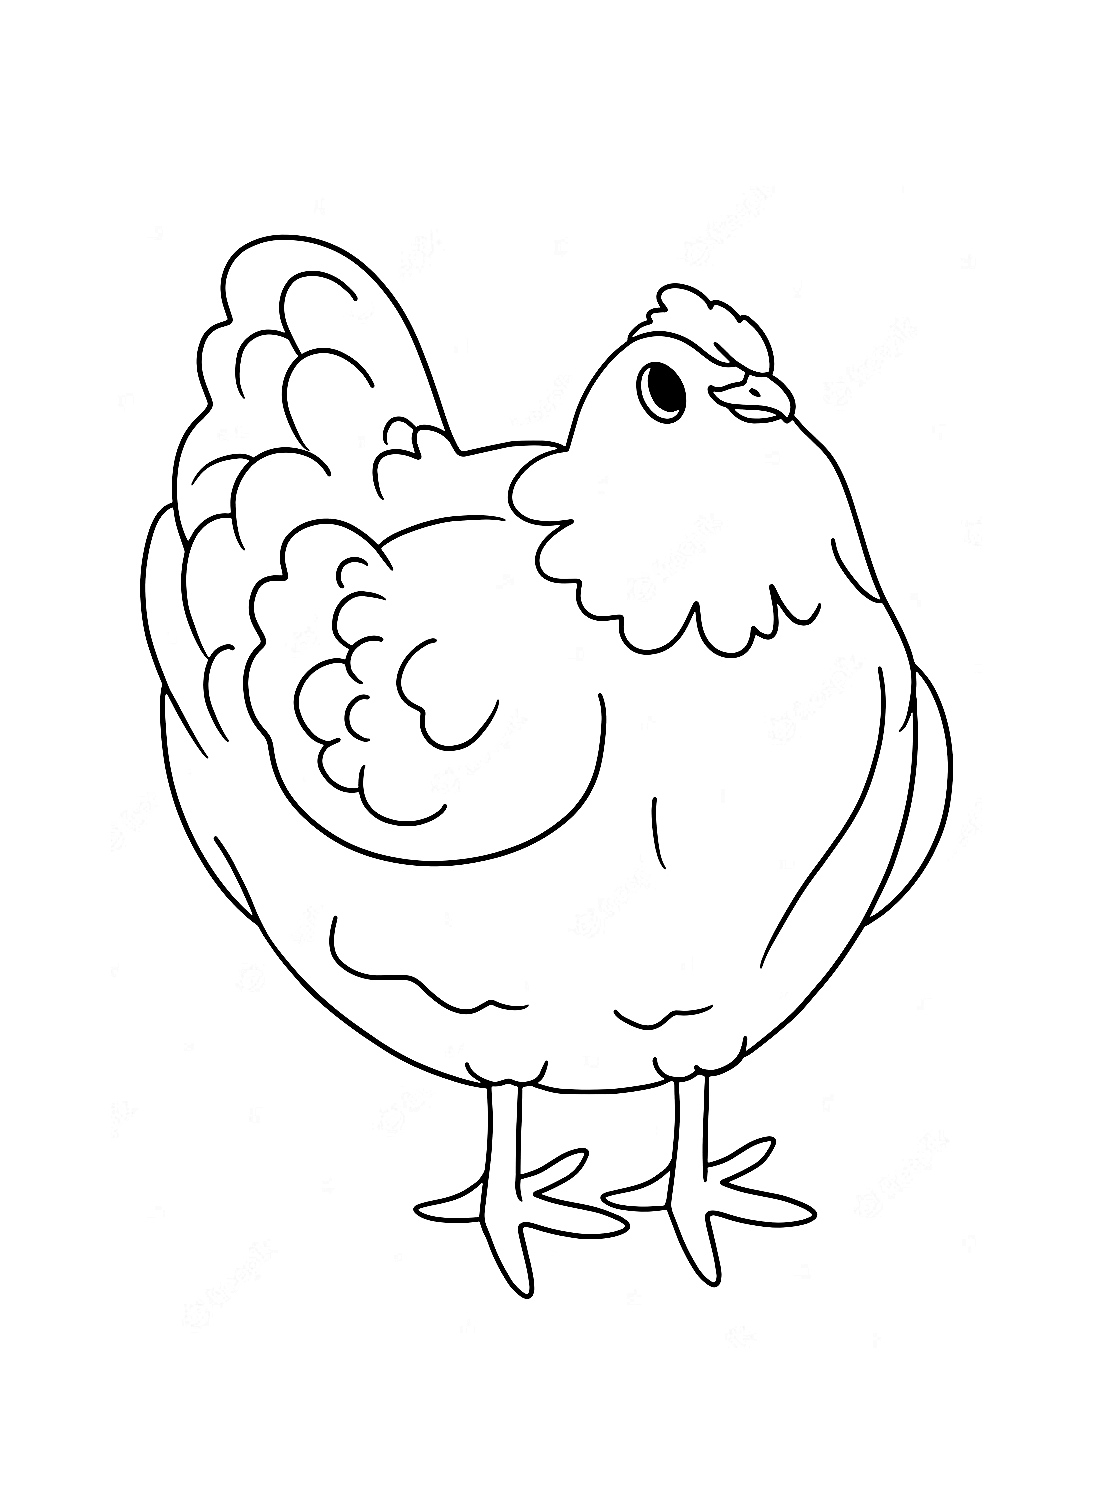 Die fette Henne von Hen